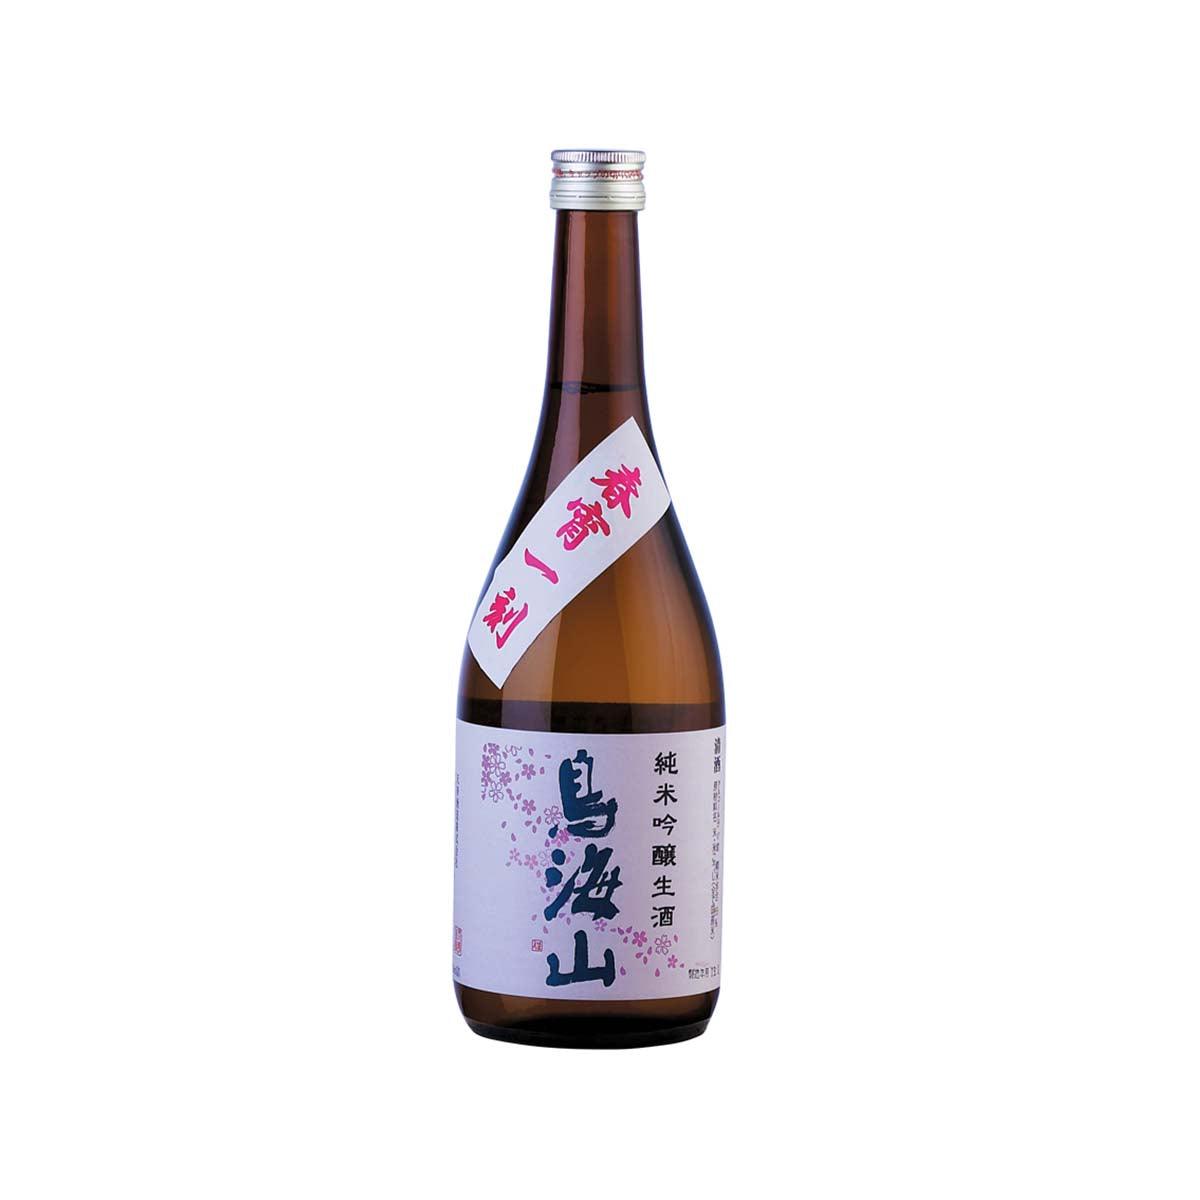 鳥海山 春宵一刻 純米吟醸生原酒 Chokaisan Spring Junmai Ginjo Nama (1x72cl)